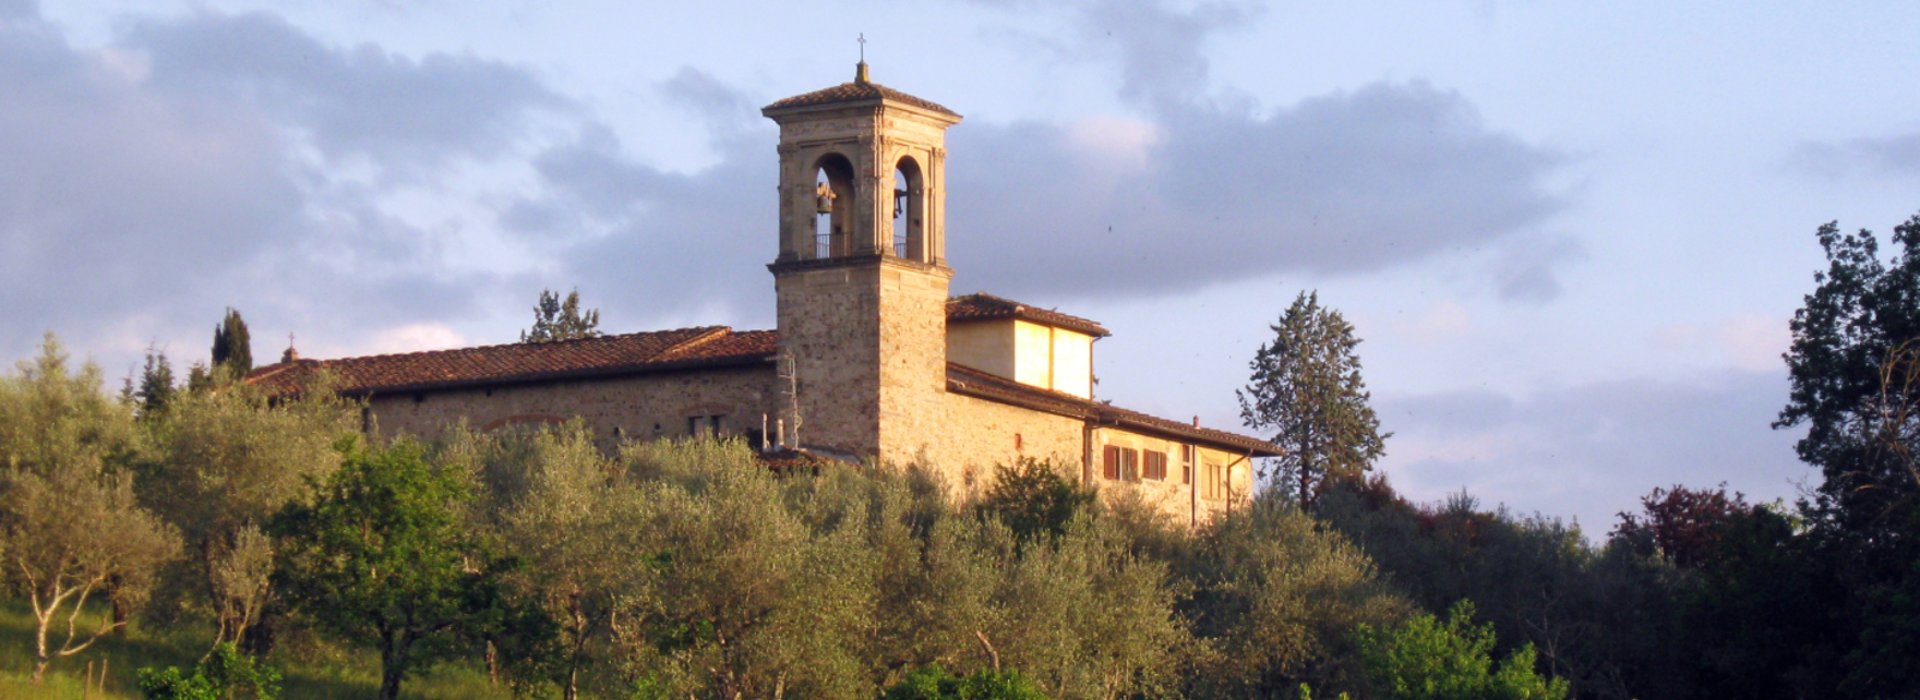 Workshop fotografico a Firenze con Vista sulla chiesa di San Martino a Montughi da Via Massaia